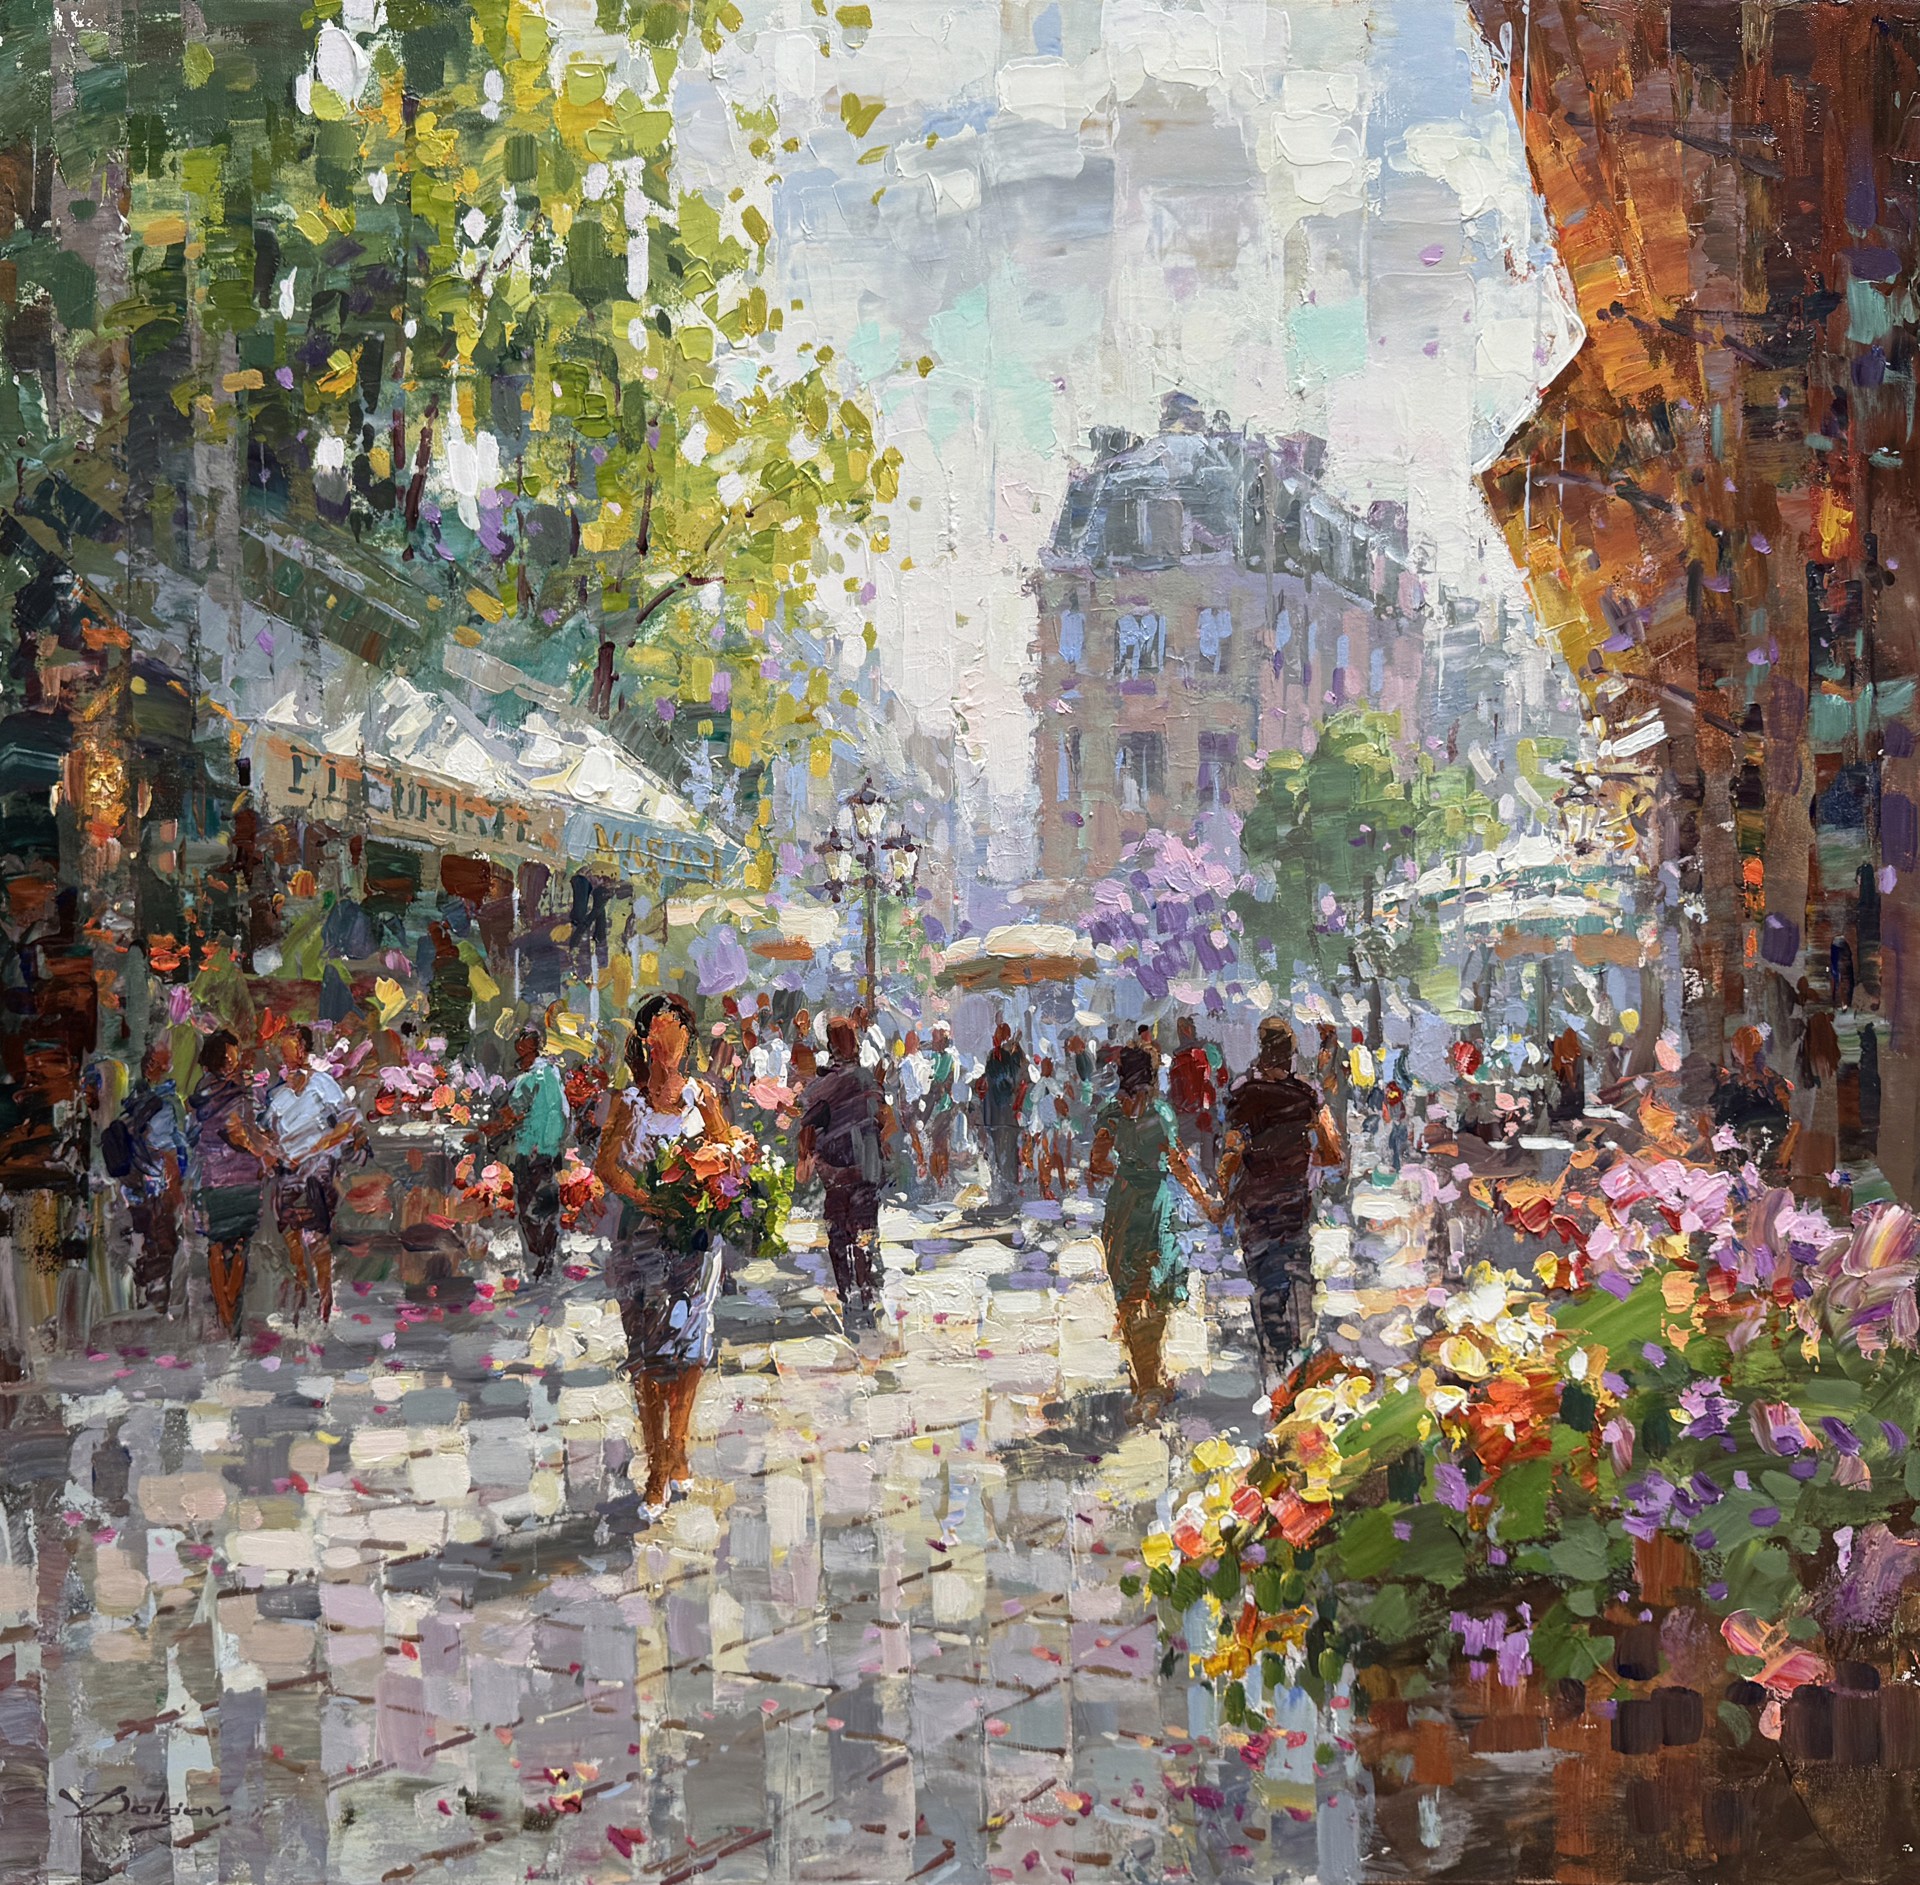 French Flower Market by Vadim Dolgov